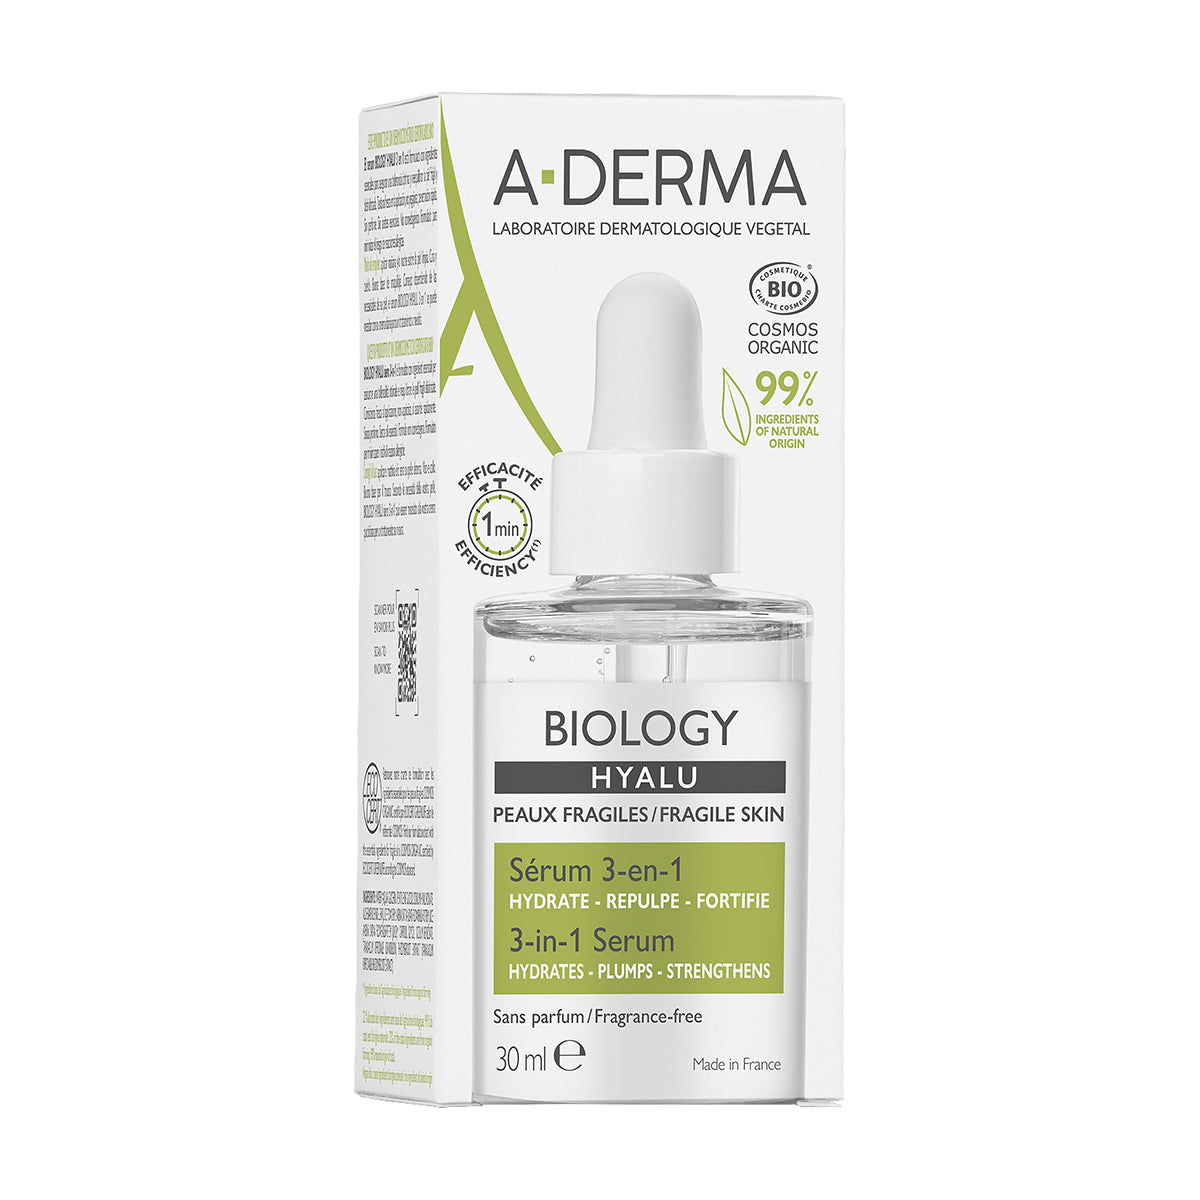 A-derma biology hyalu serum 3 en 1 30ml.